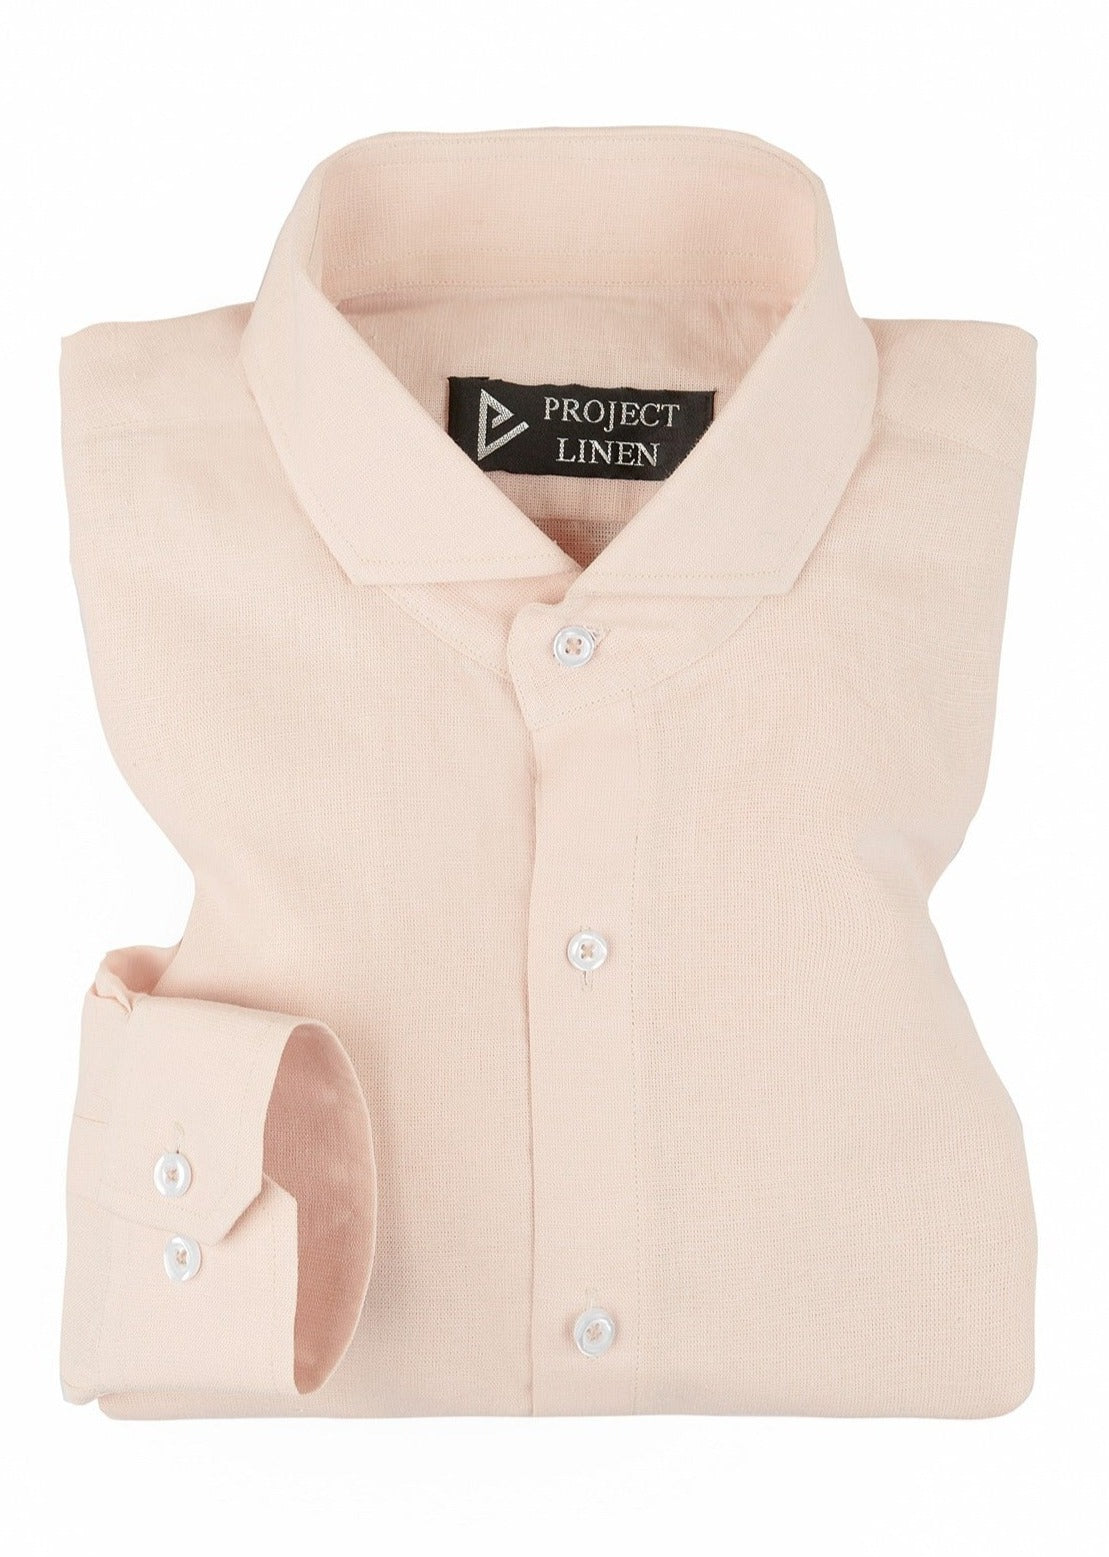 Pink Lemonade Linen Shirt - Hers